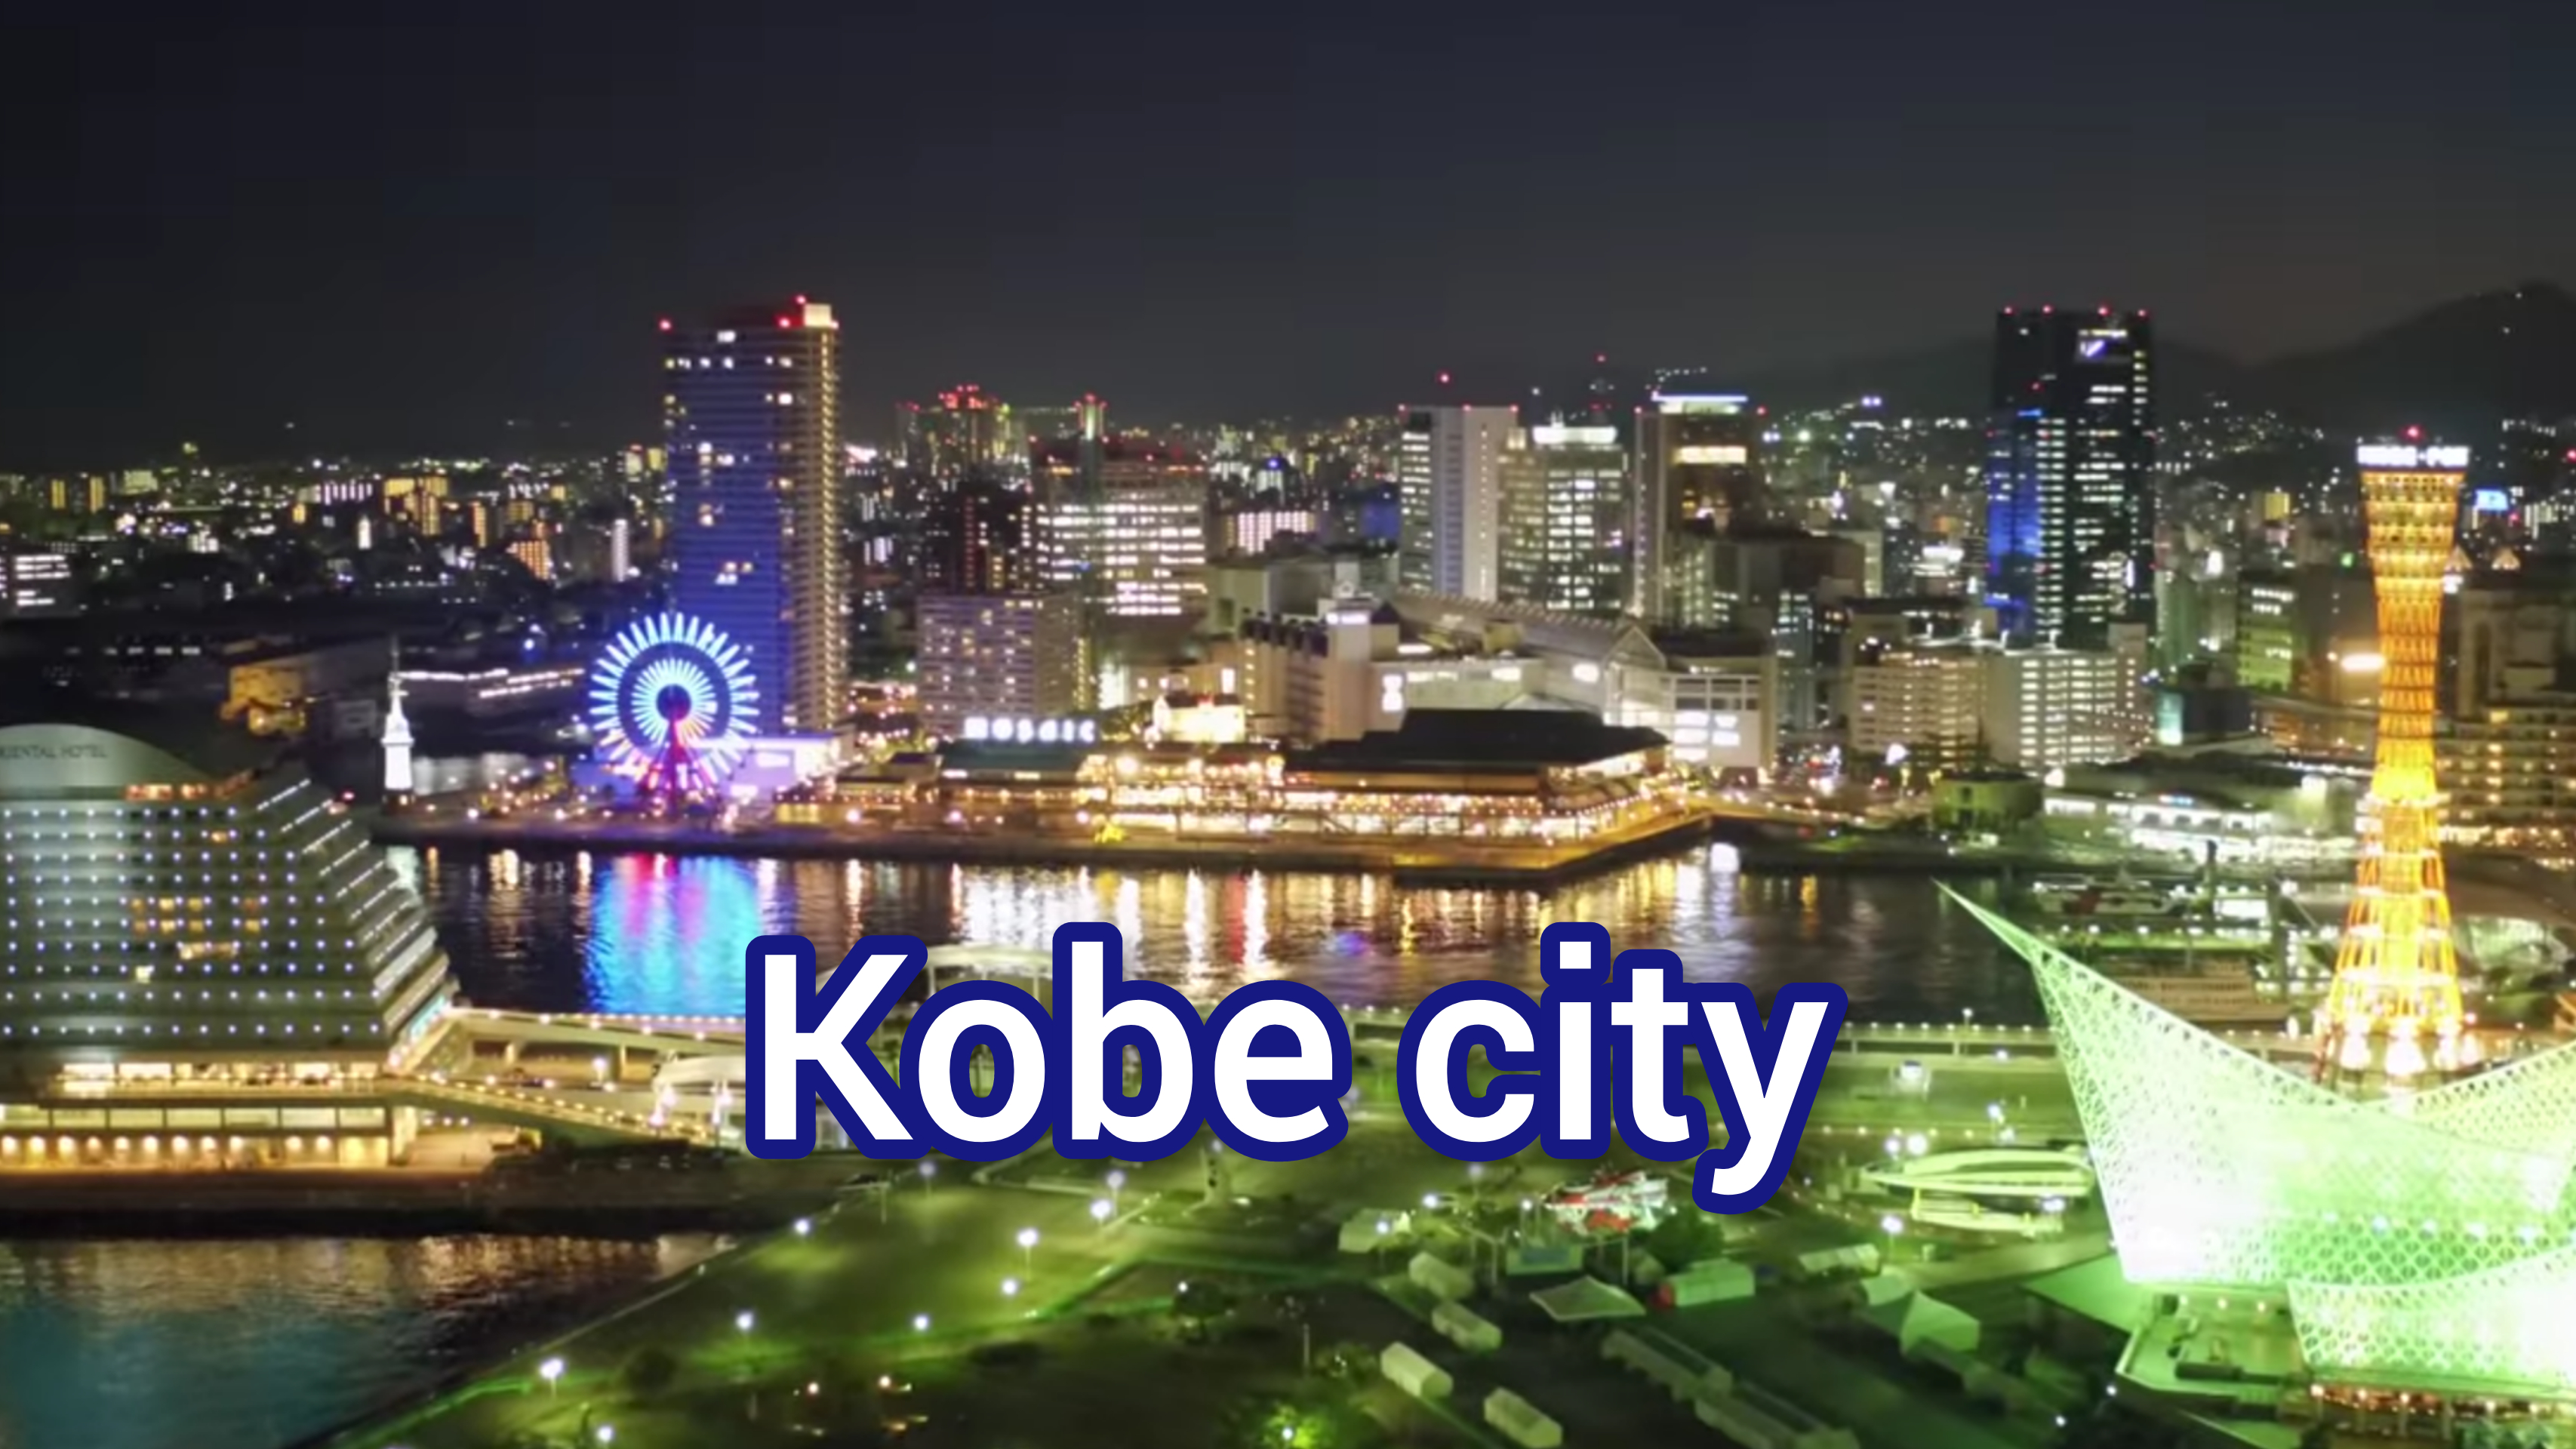 KOBE CITY